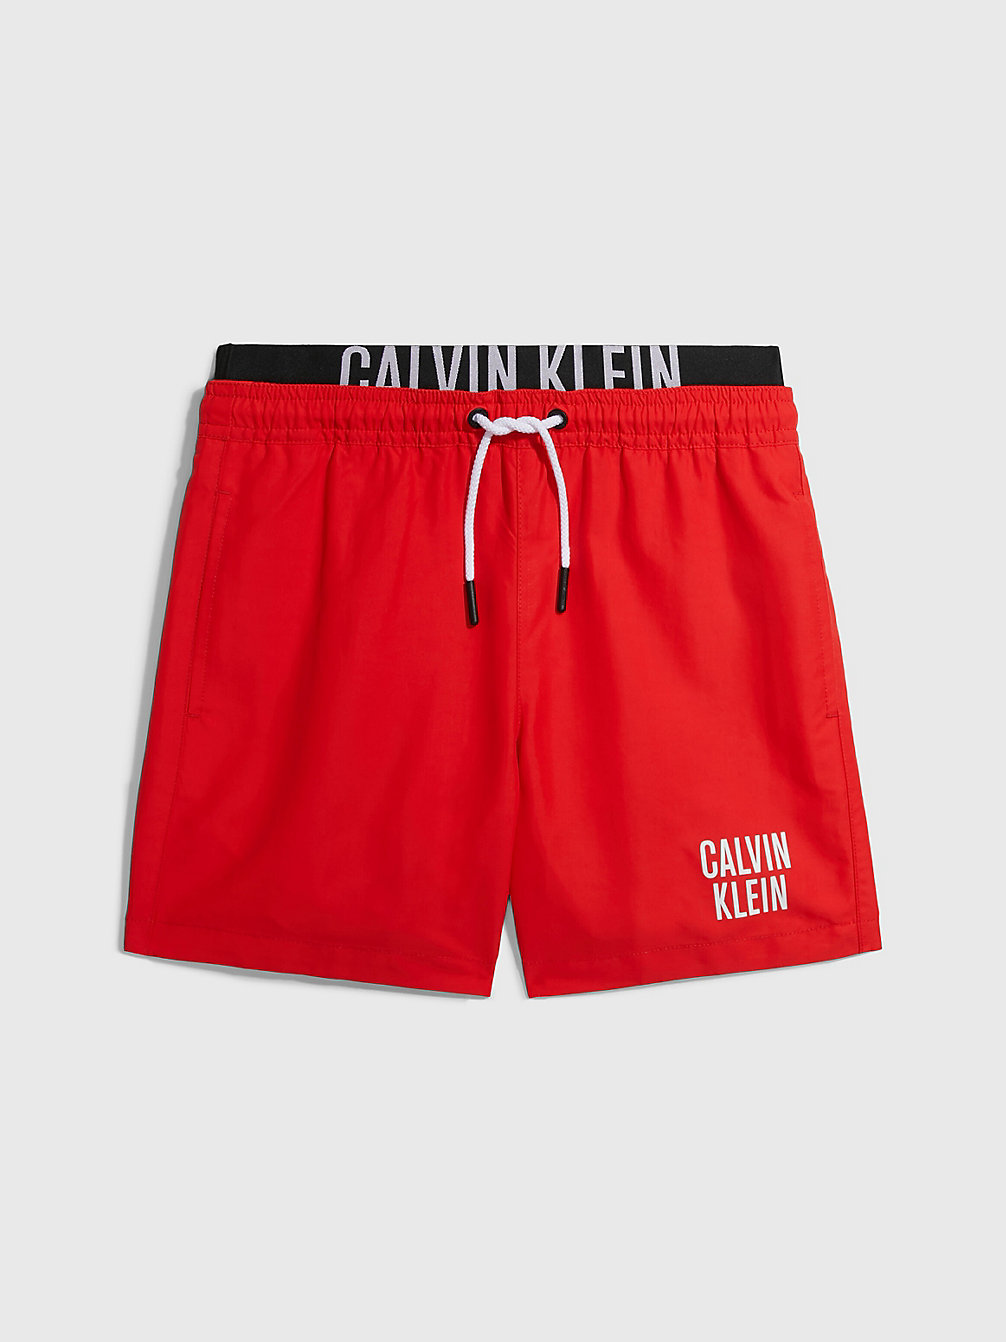 CAJUN RED > Badeshorts Für Jungen - Intense Power > undefined boys - Calvin Klein